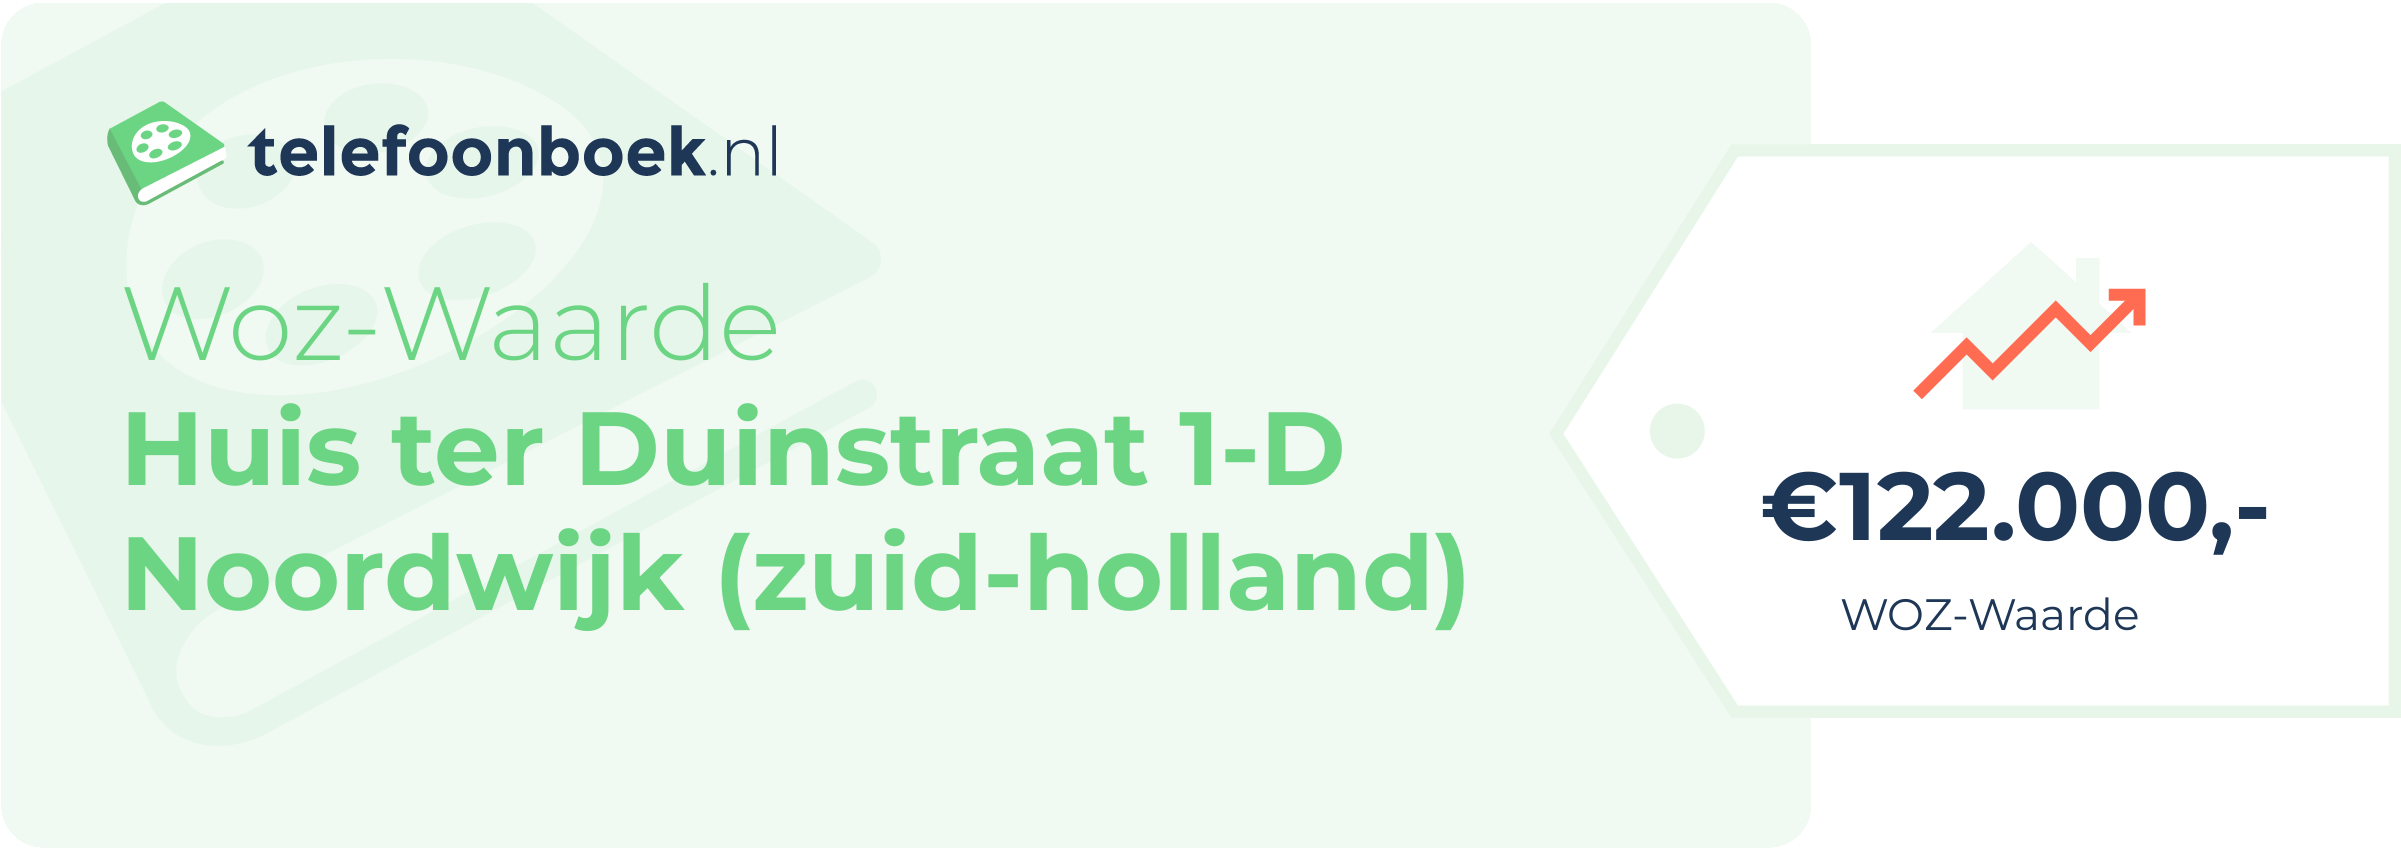 WOZ-waarde Huis Ter Duinstraat 1-D Noordwijk (Zuid-Holland)